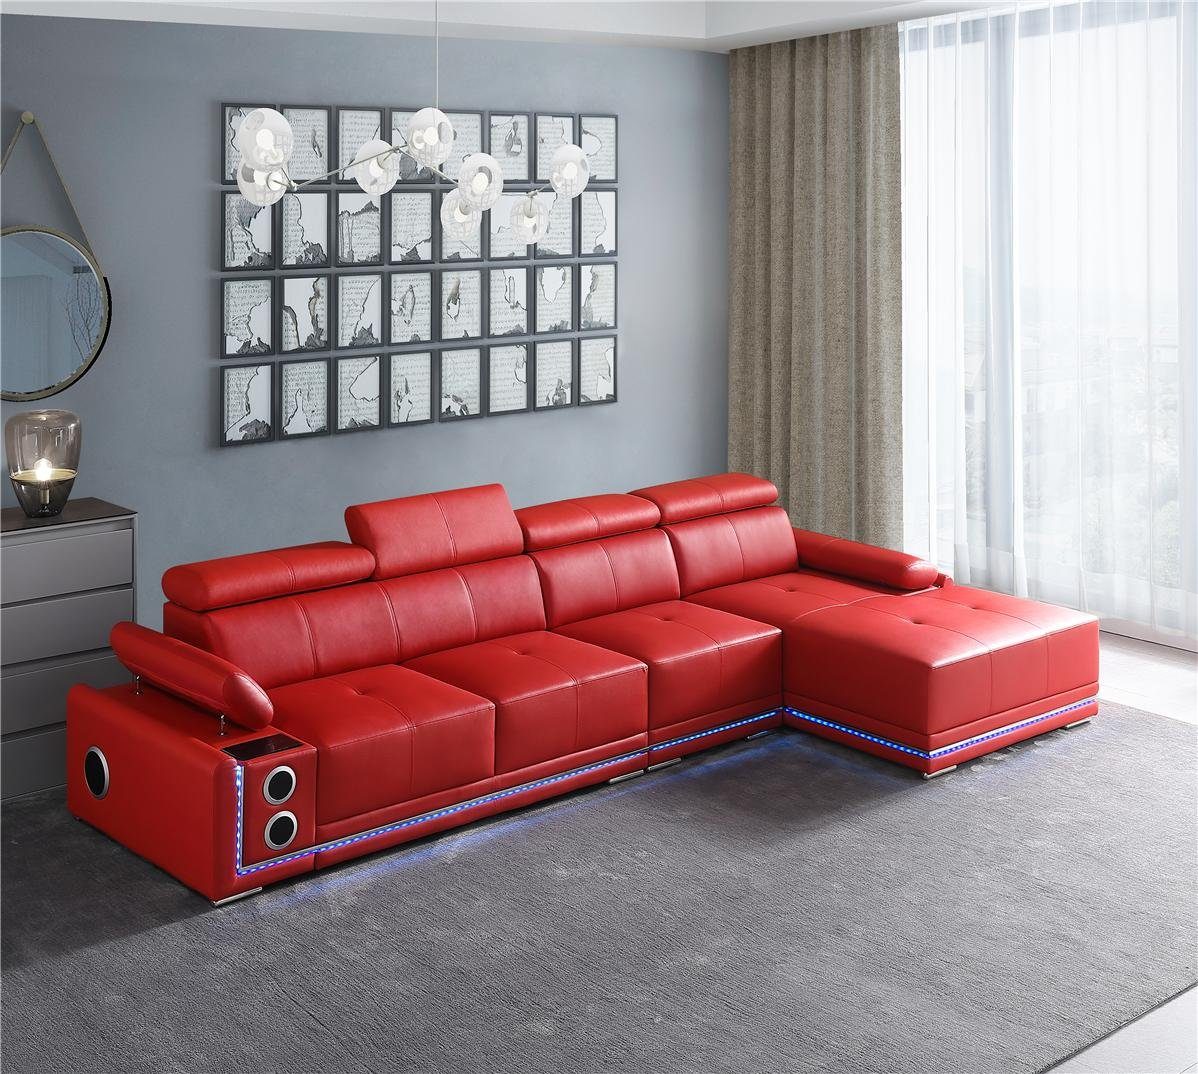 JVmoebel Ecksofa Couch Beleuchtete Leder Ecksofa L Form Sound Led Boxen, Made in Europe Rot